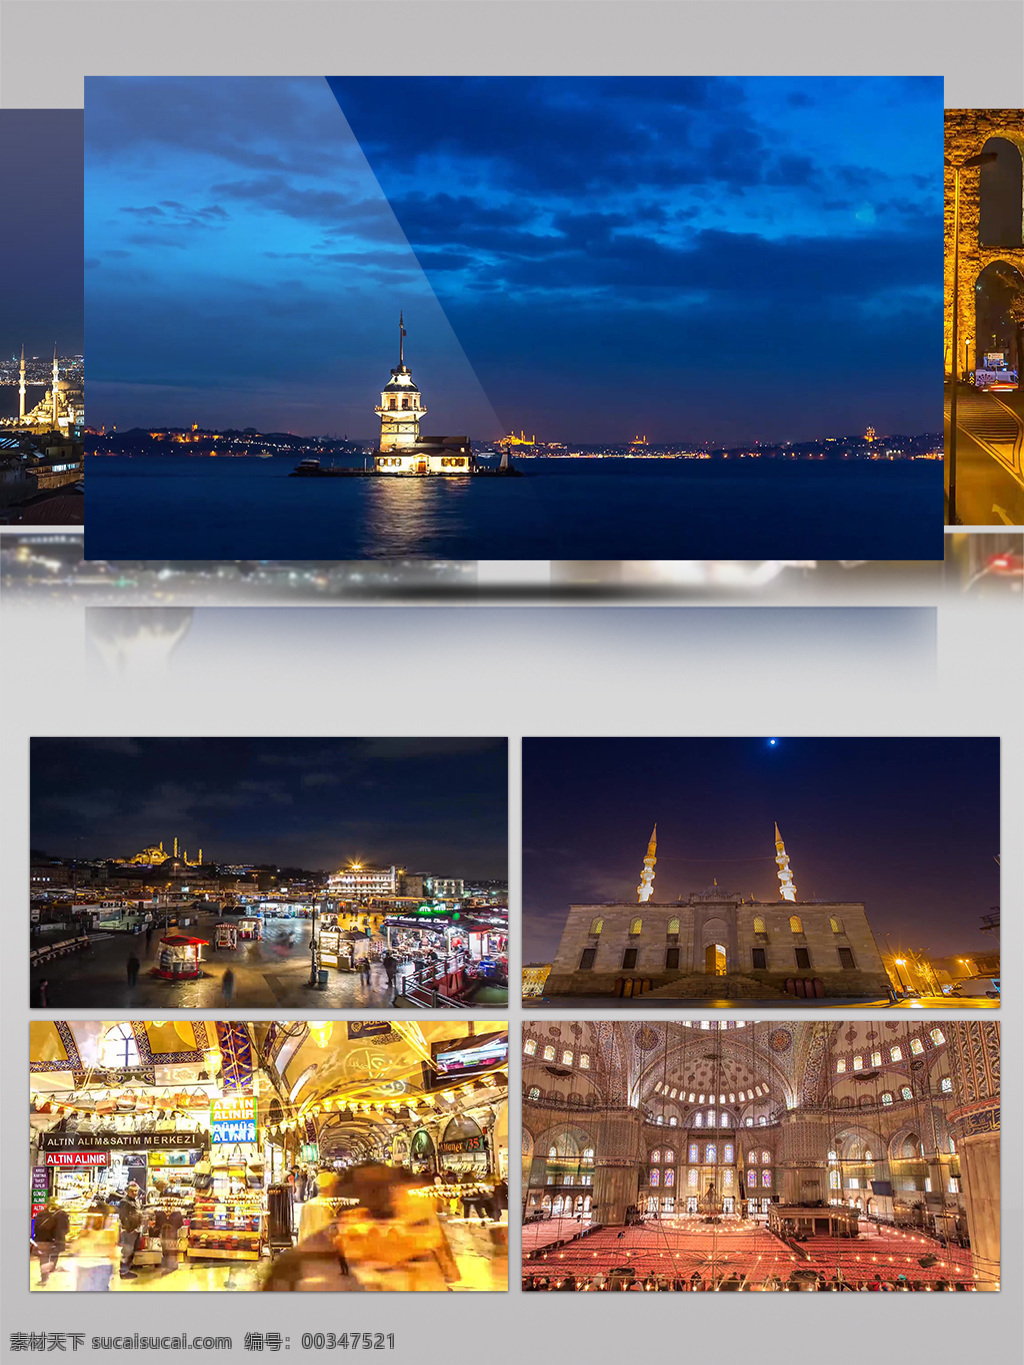 4k 伊斯坦布尔 城市 夜景 景观 人文 风光 唯美 历史 建筑 旅游 城市景观 夜景灯光 欧洲风情